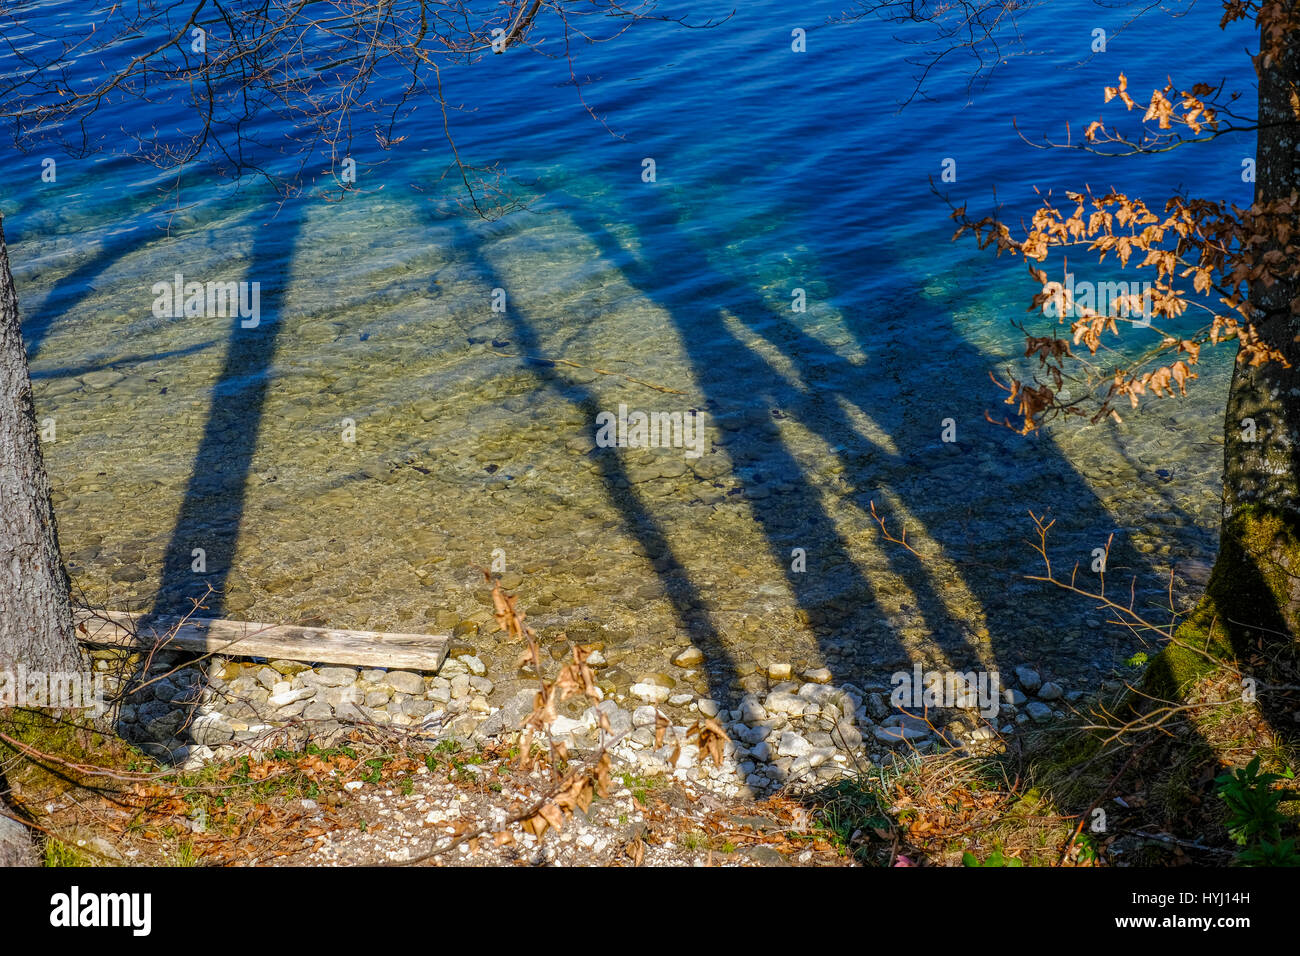 Lago Fuschlsee vistos a través de las sombras de los árboles Foto de stock